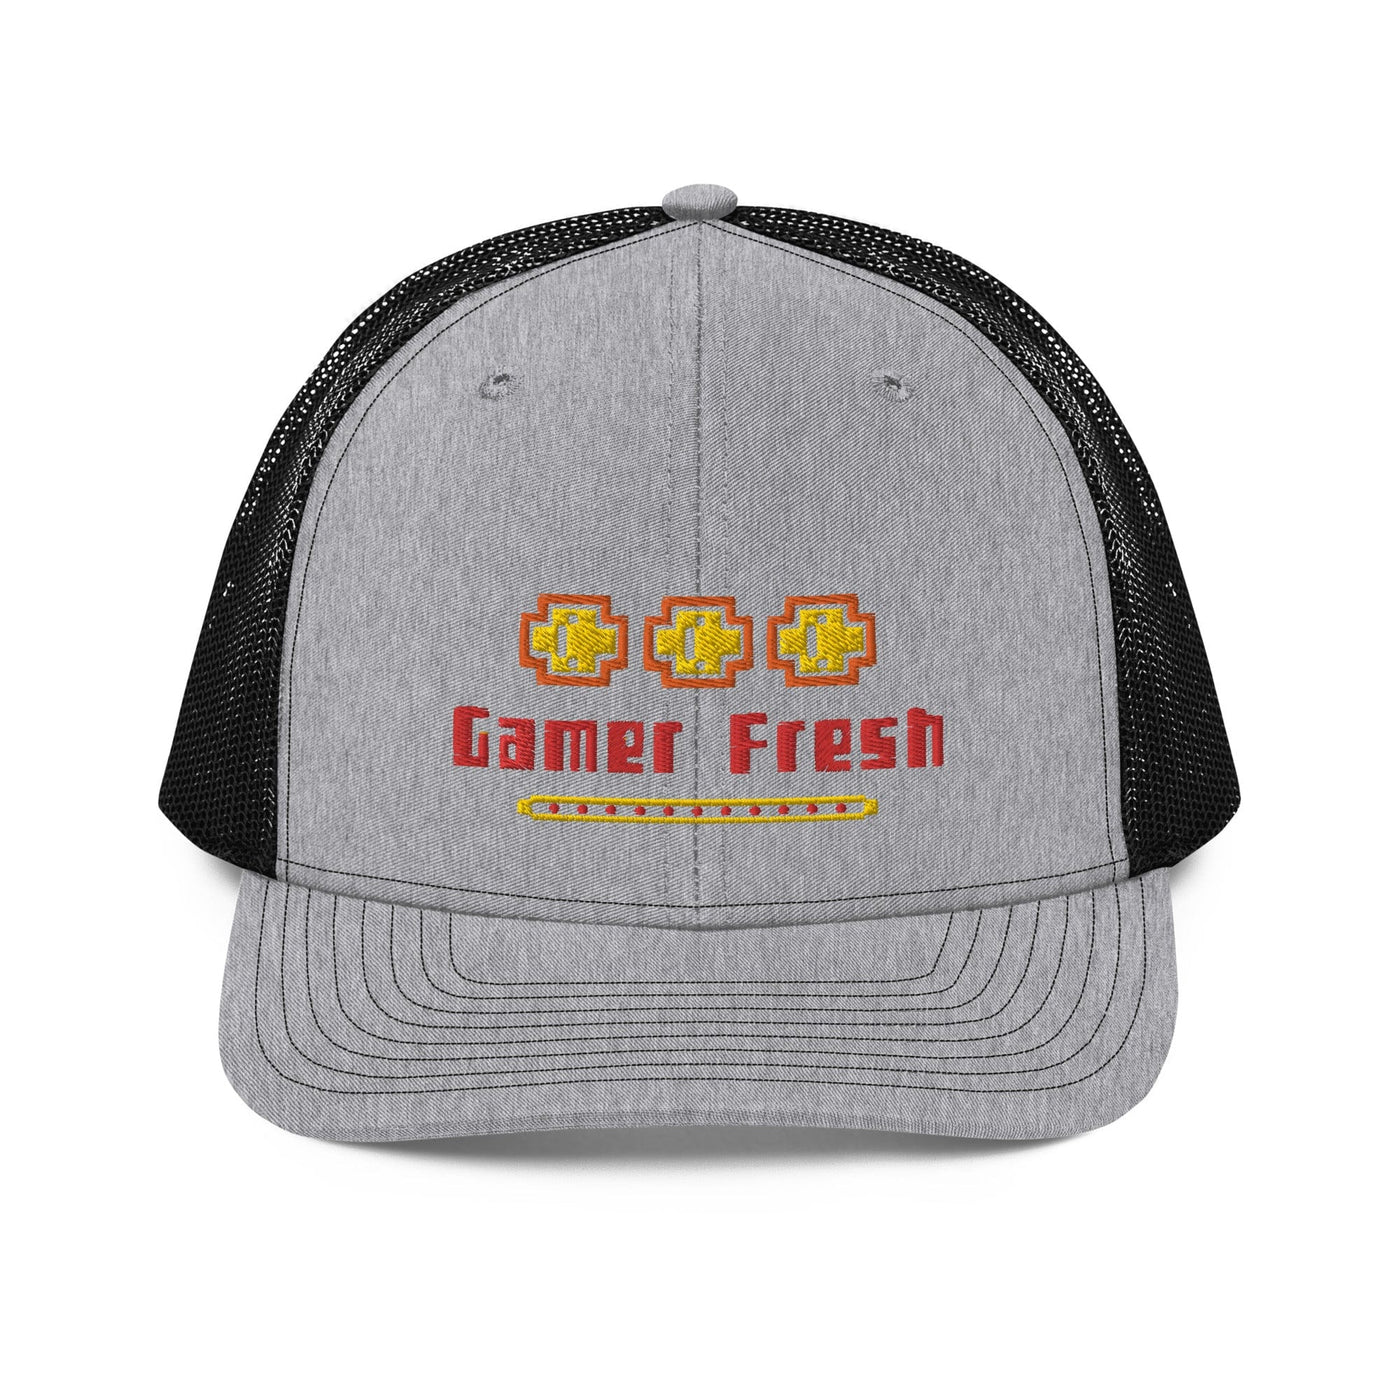 Gamer Fresh | Coin Drop Life Trucker Cap